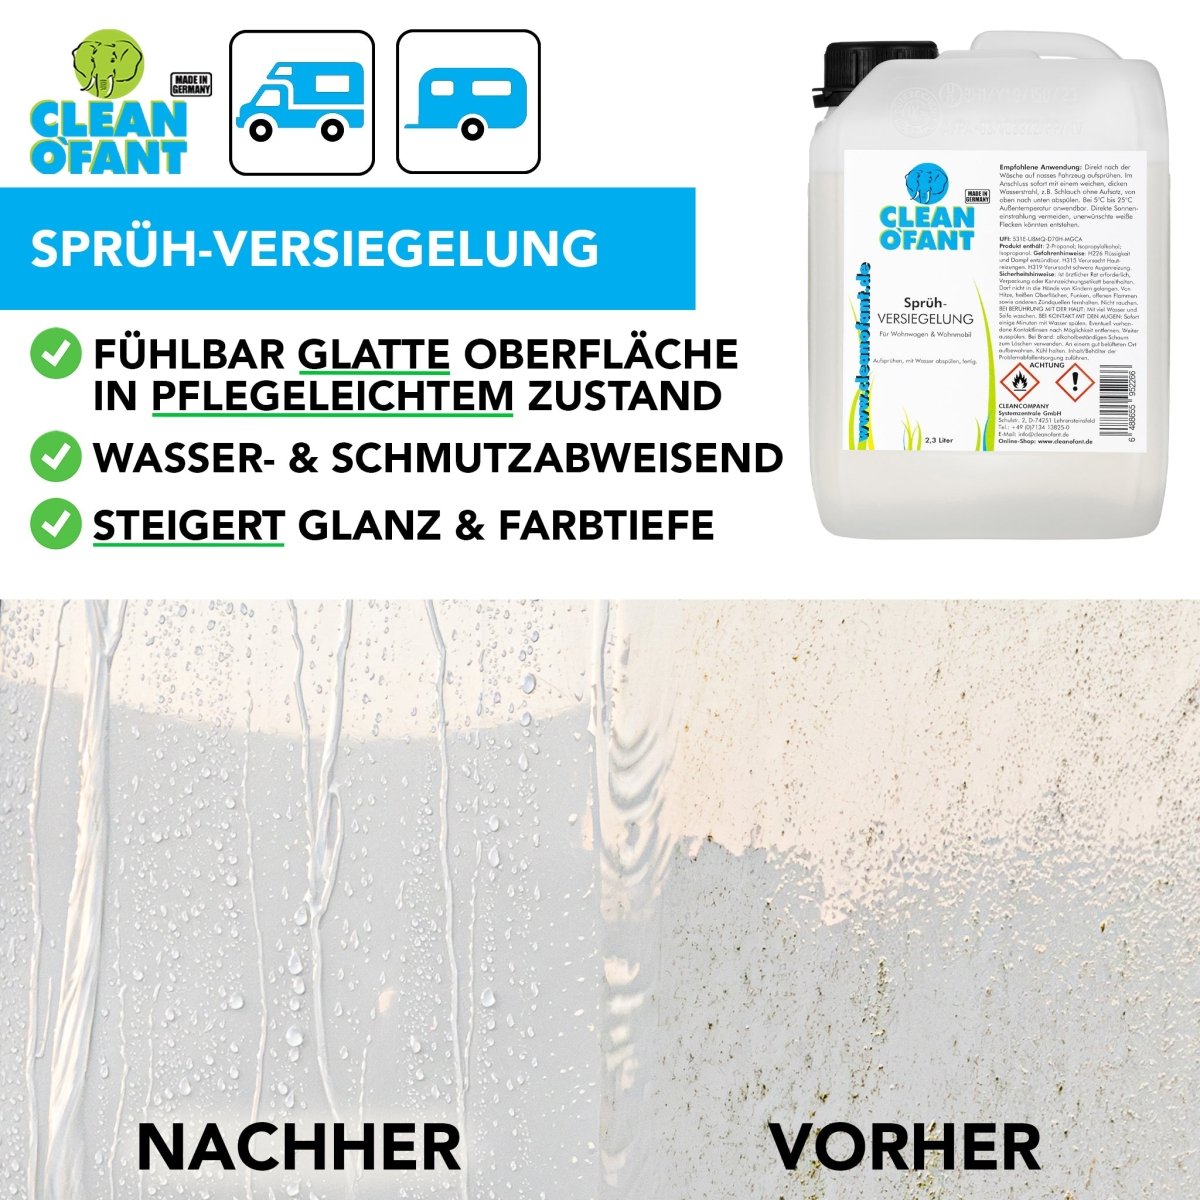 Sprüh-VERSIEGELUNG 2,3 Liter (Wohnwagen / Wohnmobil) + Pumpsprühflasche Profi 1,5 Liter (Drucksprüher) - Düse verstellbar Set - CLEANOFANT